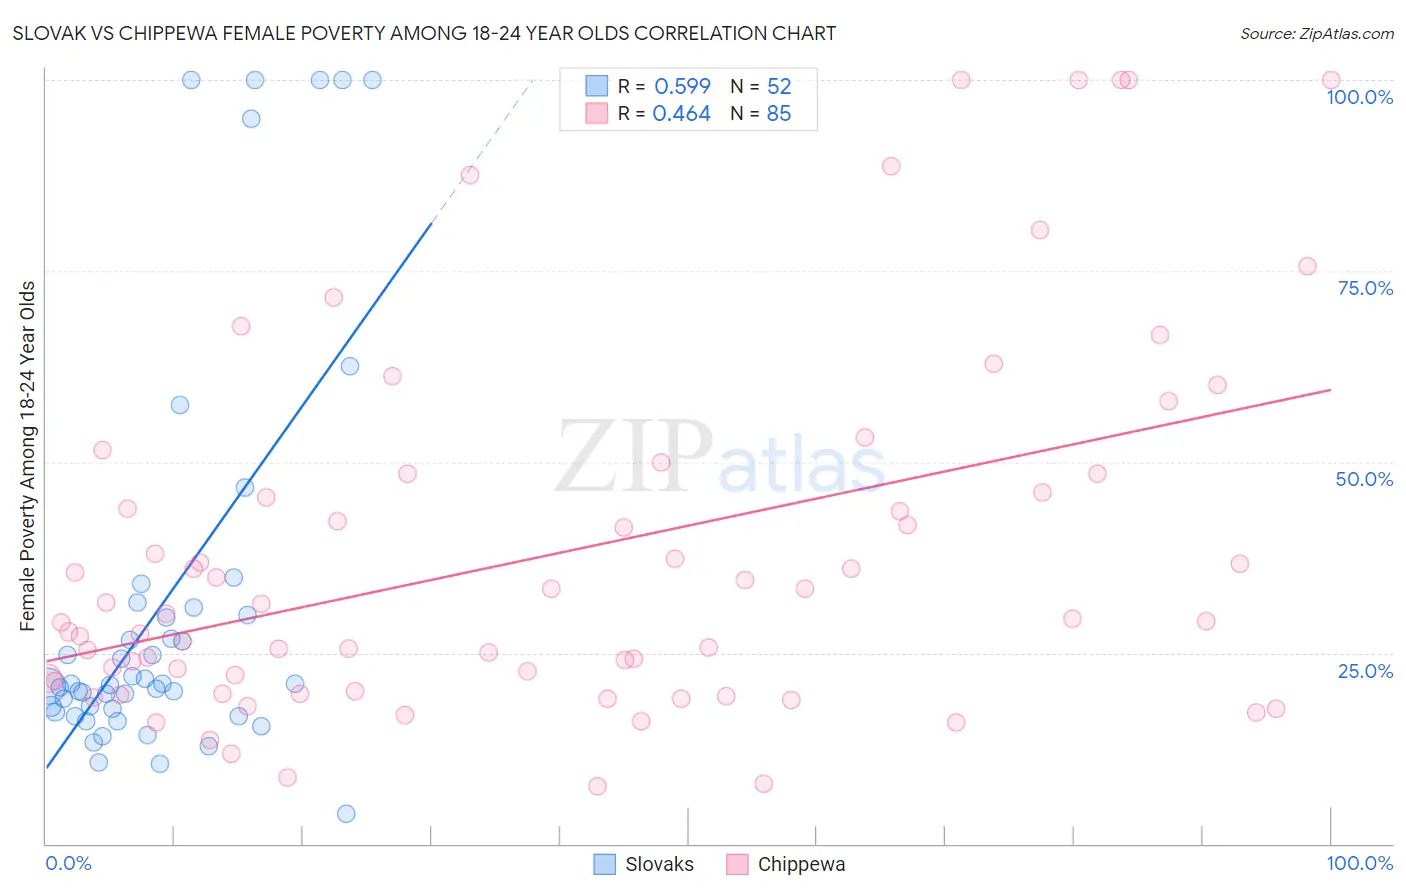 Slovak vs Chippewa Female Poverty Among 18-24 Year Olds